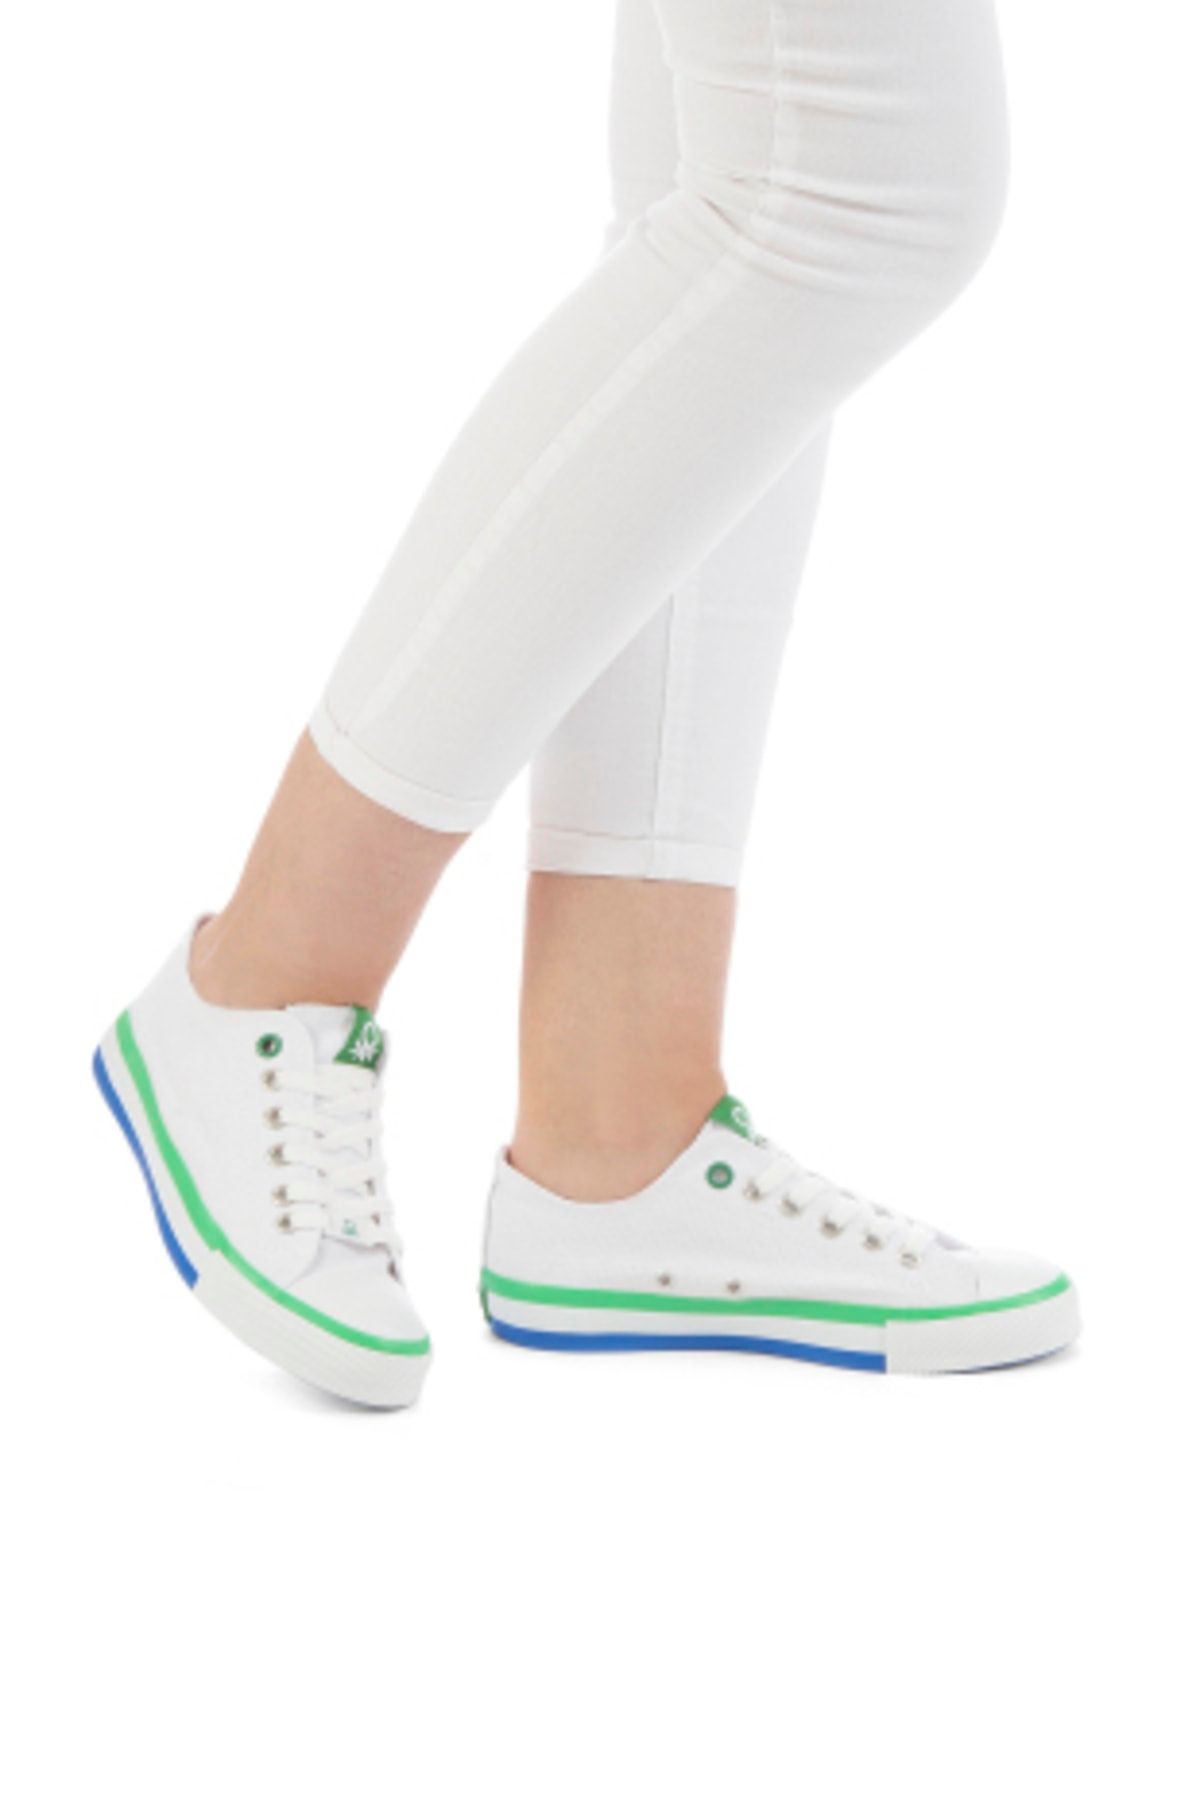 Benetton Kadın Beyaz-yeşil Spor Ayakkabı 30176